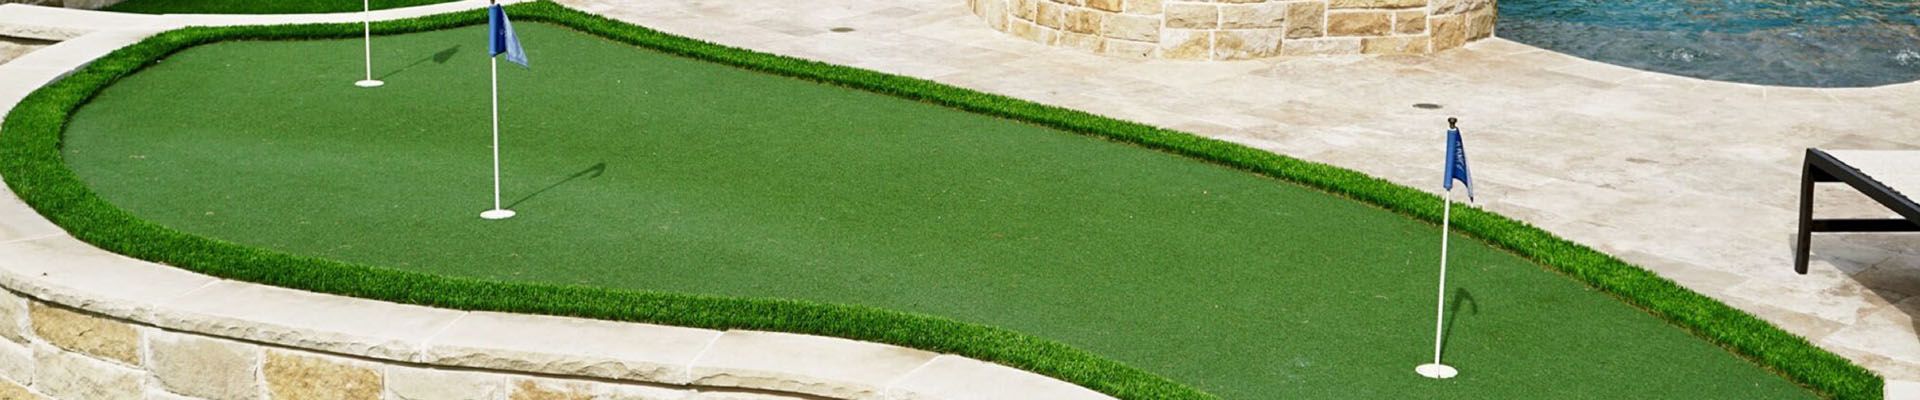 Putting Greens - Artificial grass backyard putting greens by WinterGreen